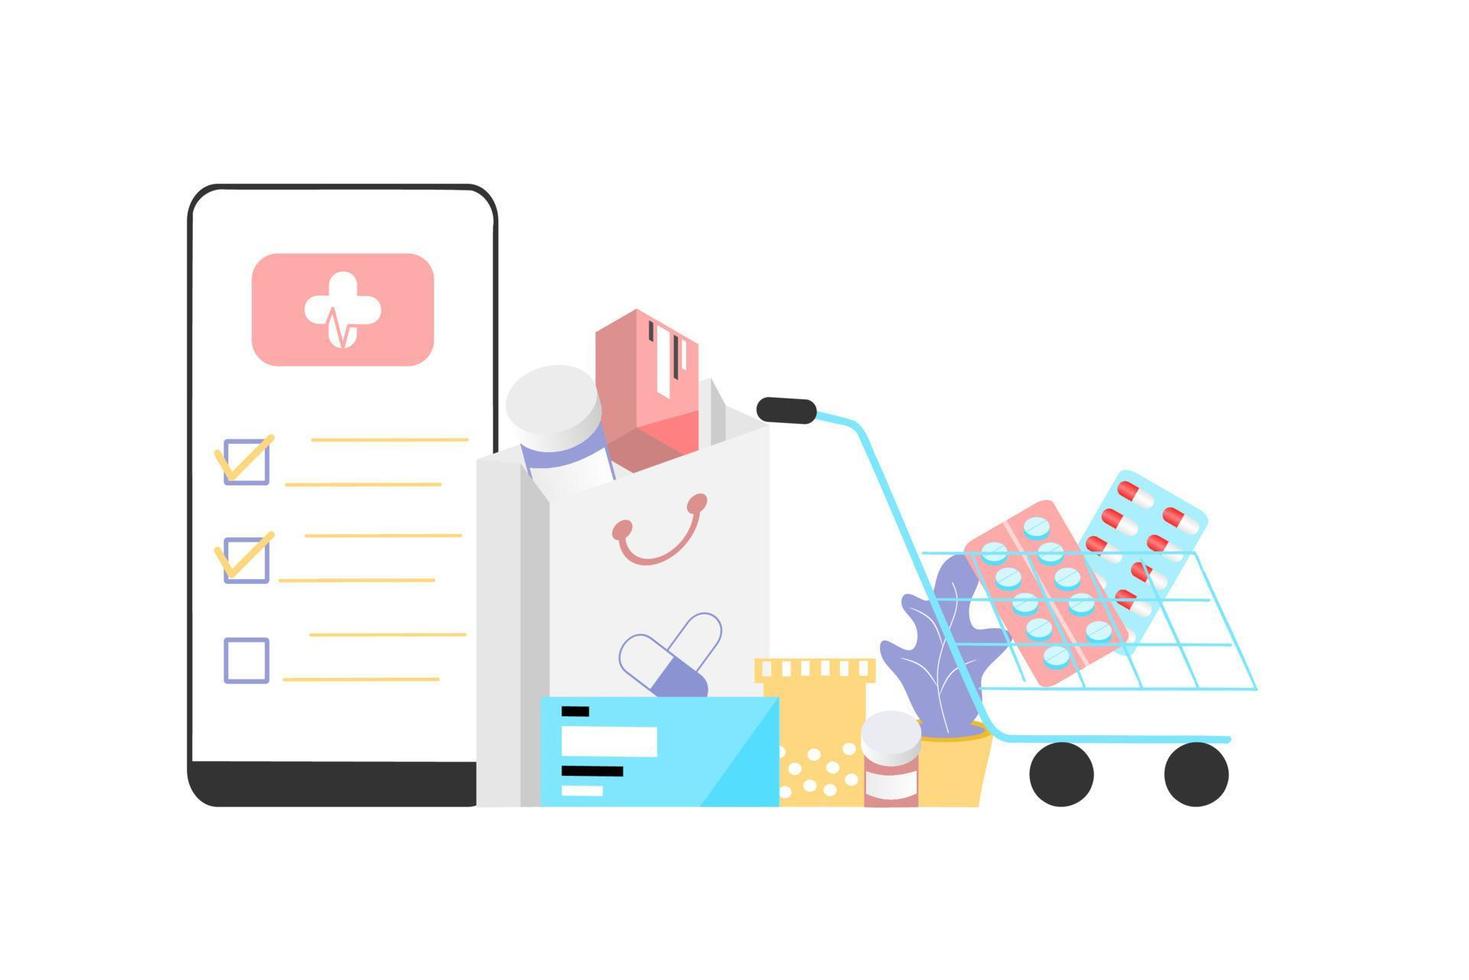 online apotheek app concept van gezondheidszorg, drogisterij en e-commerce. vectorillustratie van geneesmiddelen op recept, EHBO-kit en medische benodigdheden die online worden verkocht via web- of computertechnologie. vector